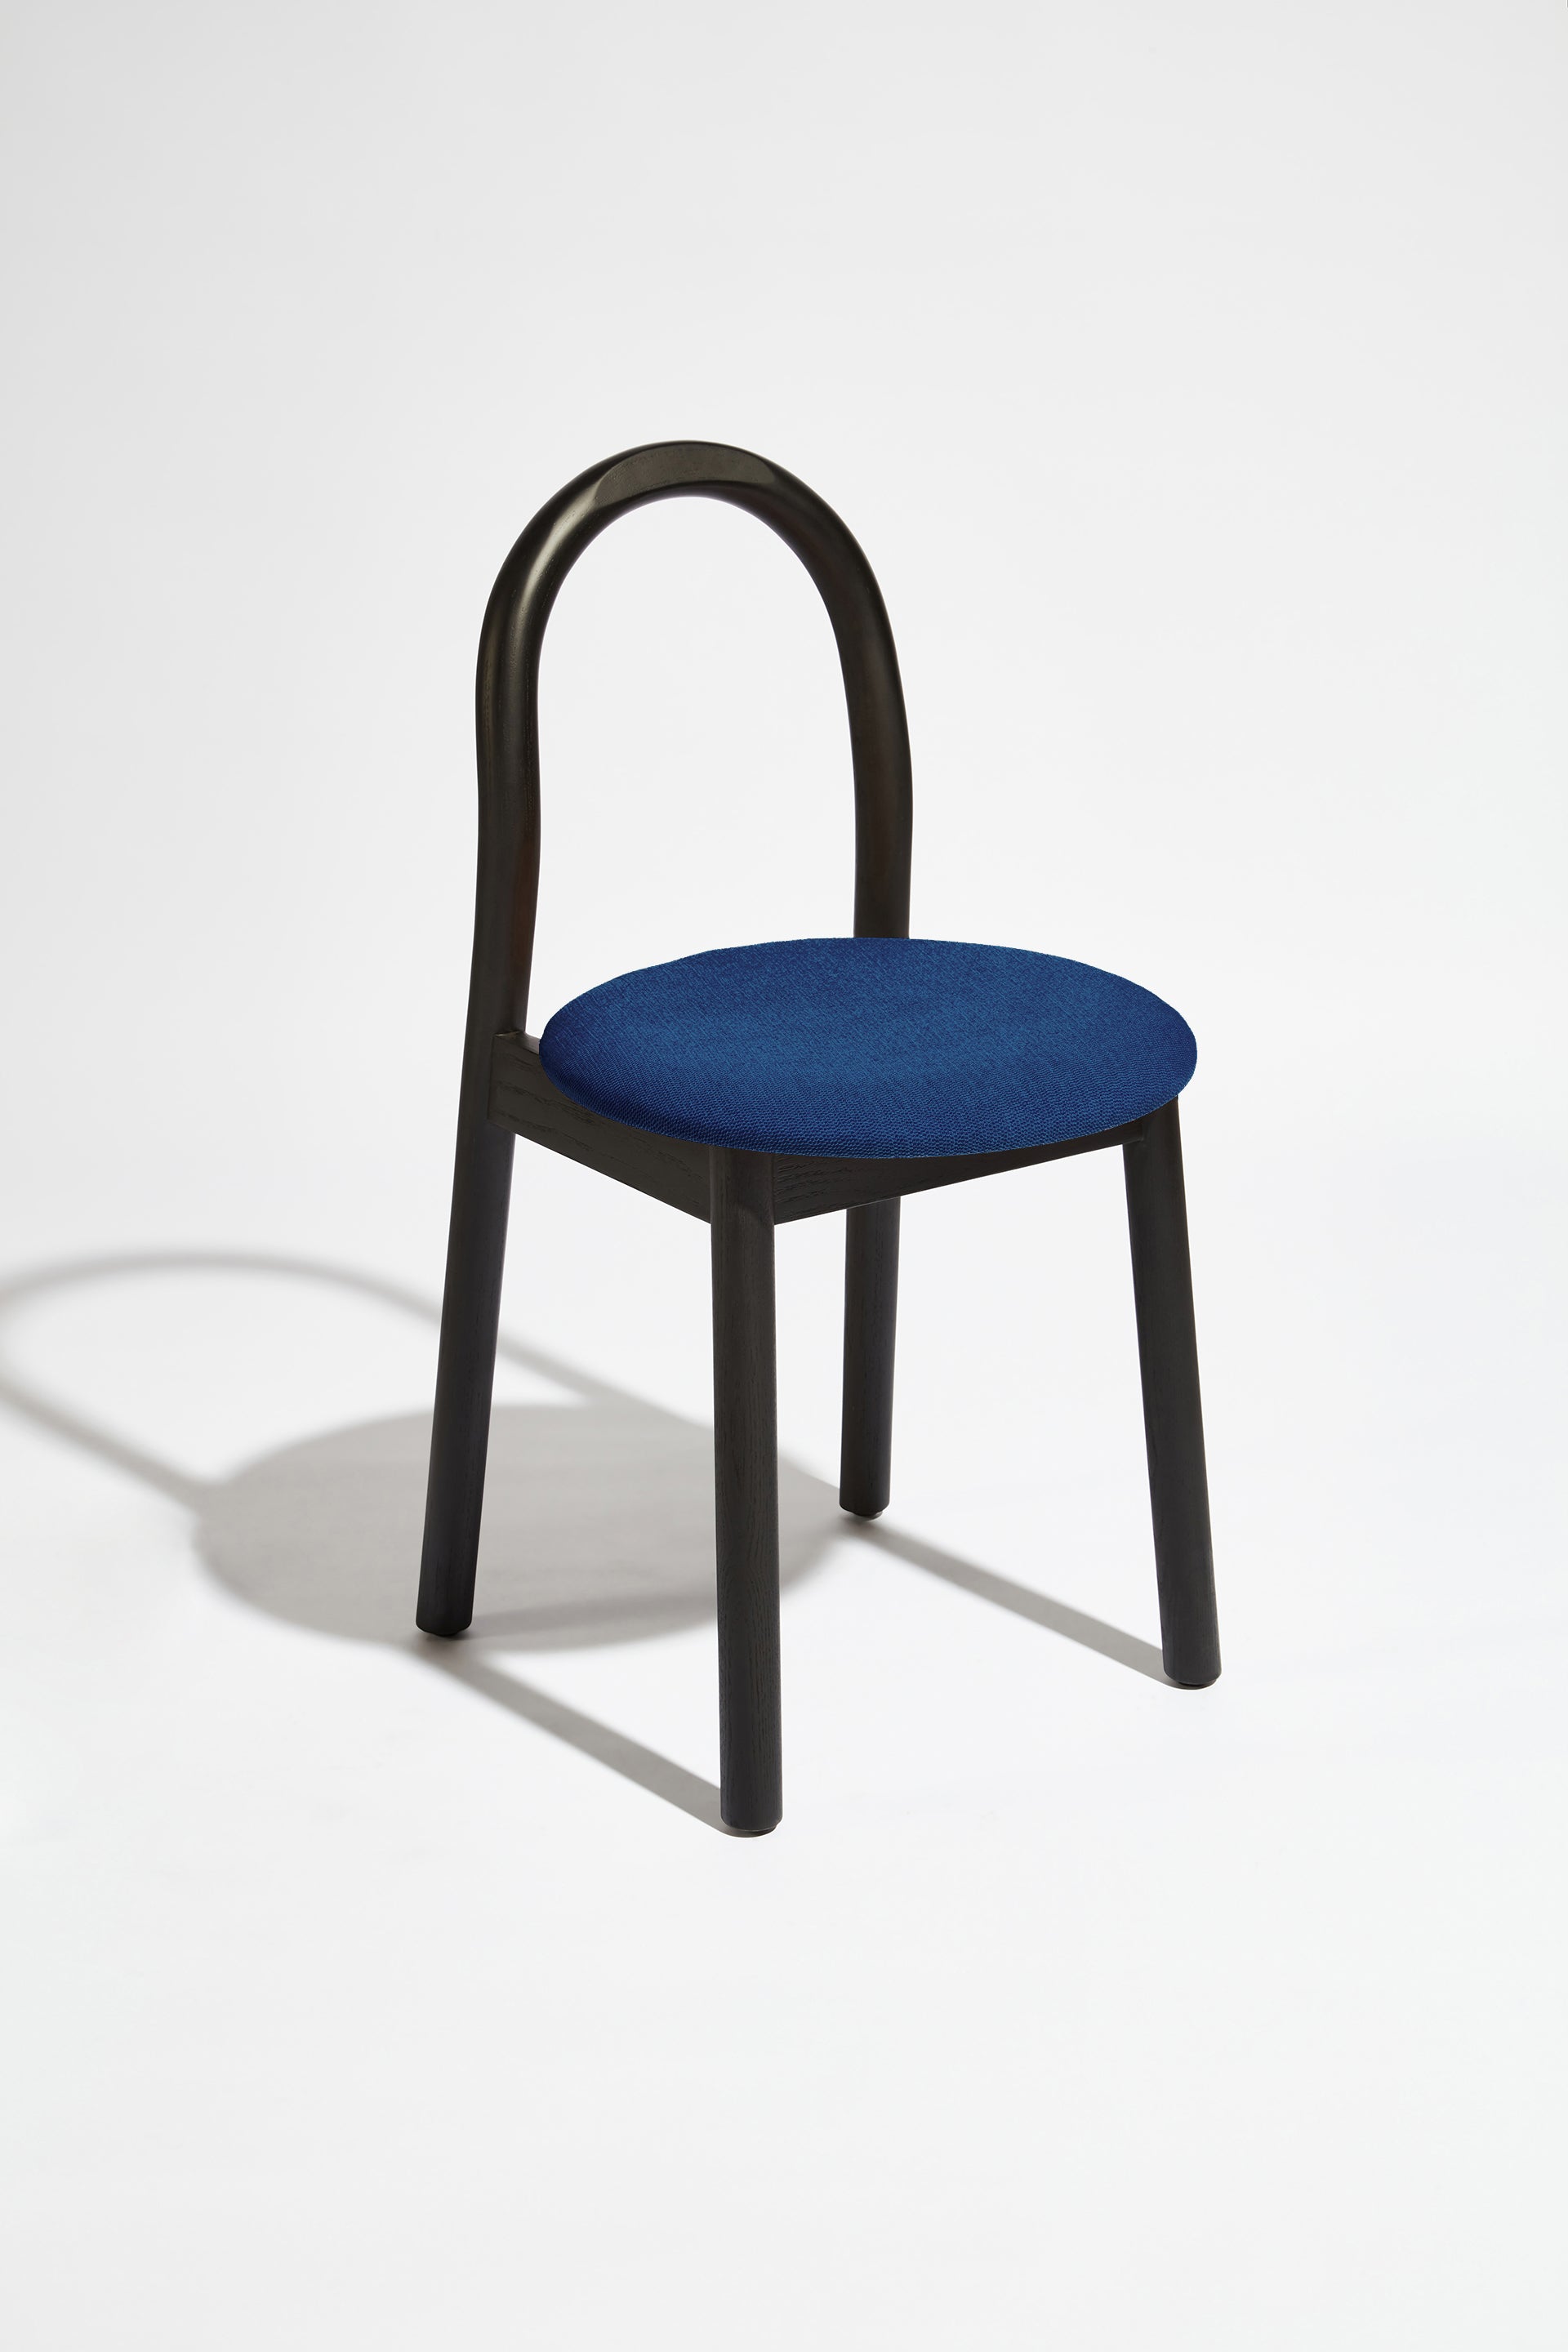 Bobby Chair Upholstered | Black Timber Wooden Dining Chair | Daniel Tucker | DesignByThem ** HF2 Messenger - 038 Depth / Black Stained Ash